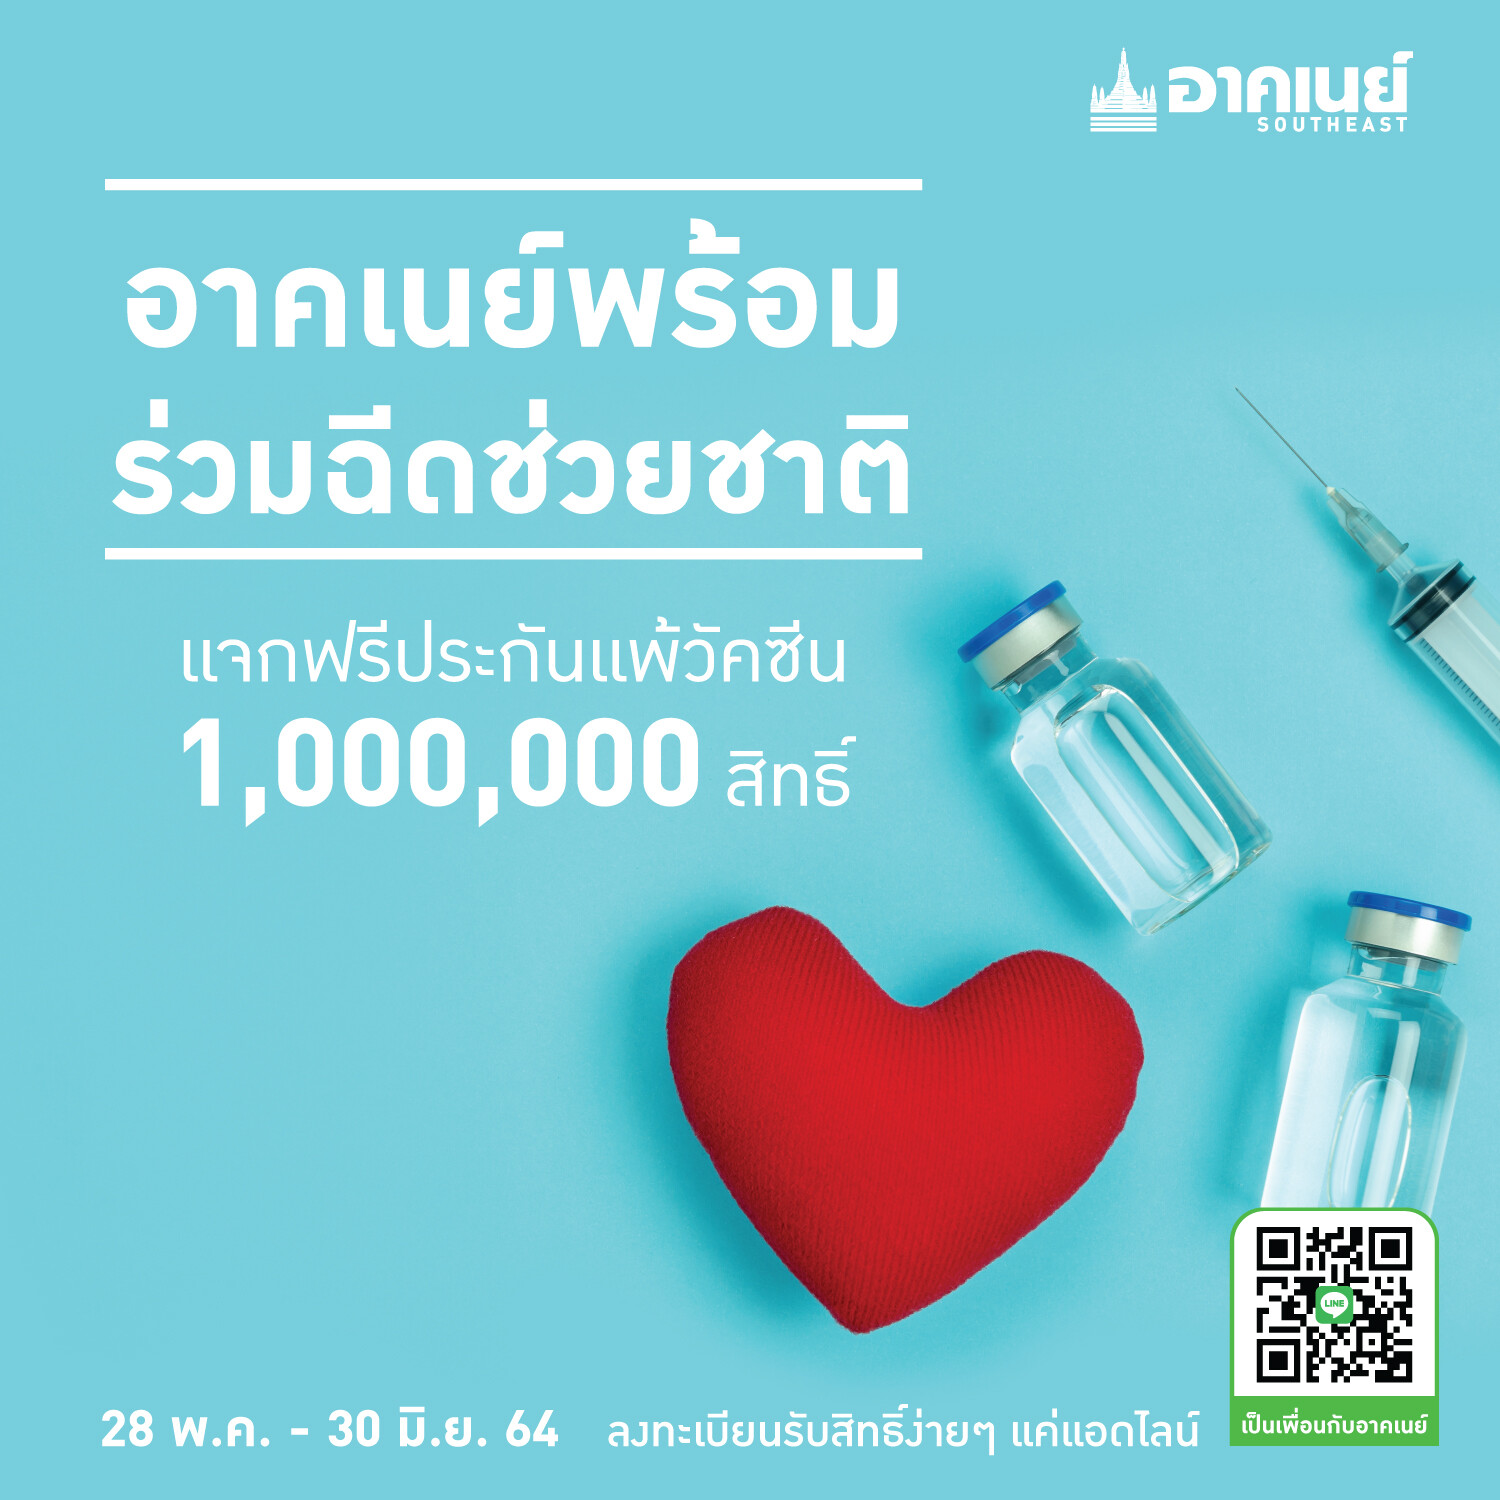 อาคเนย์พร้อมมอบความอุ่นใจเพื่อคนไทย ฉีดช่วยชาติ แจกฟรีประกันแพ้วัคซีนสู้โควิด 1 ล้านสิทธิ์